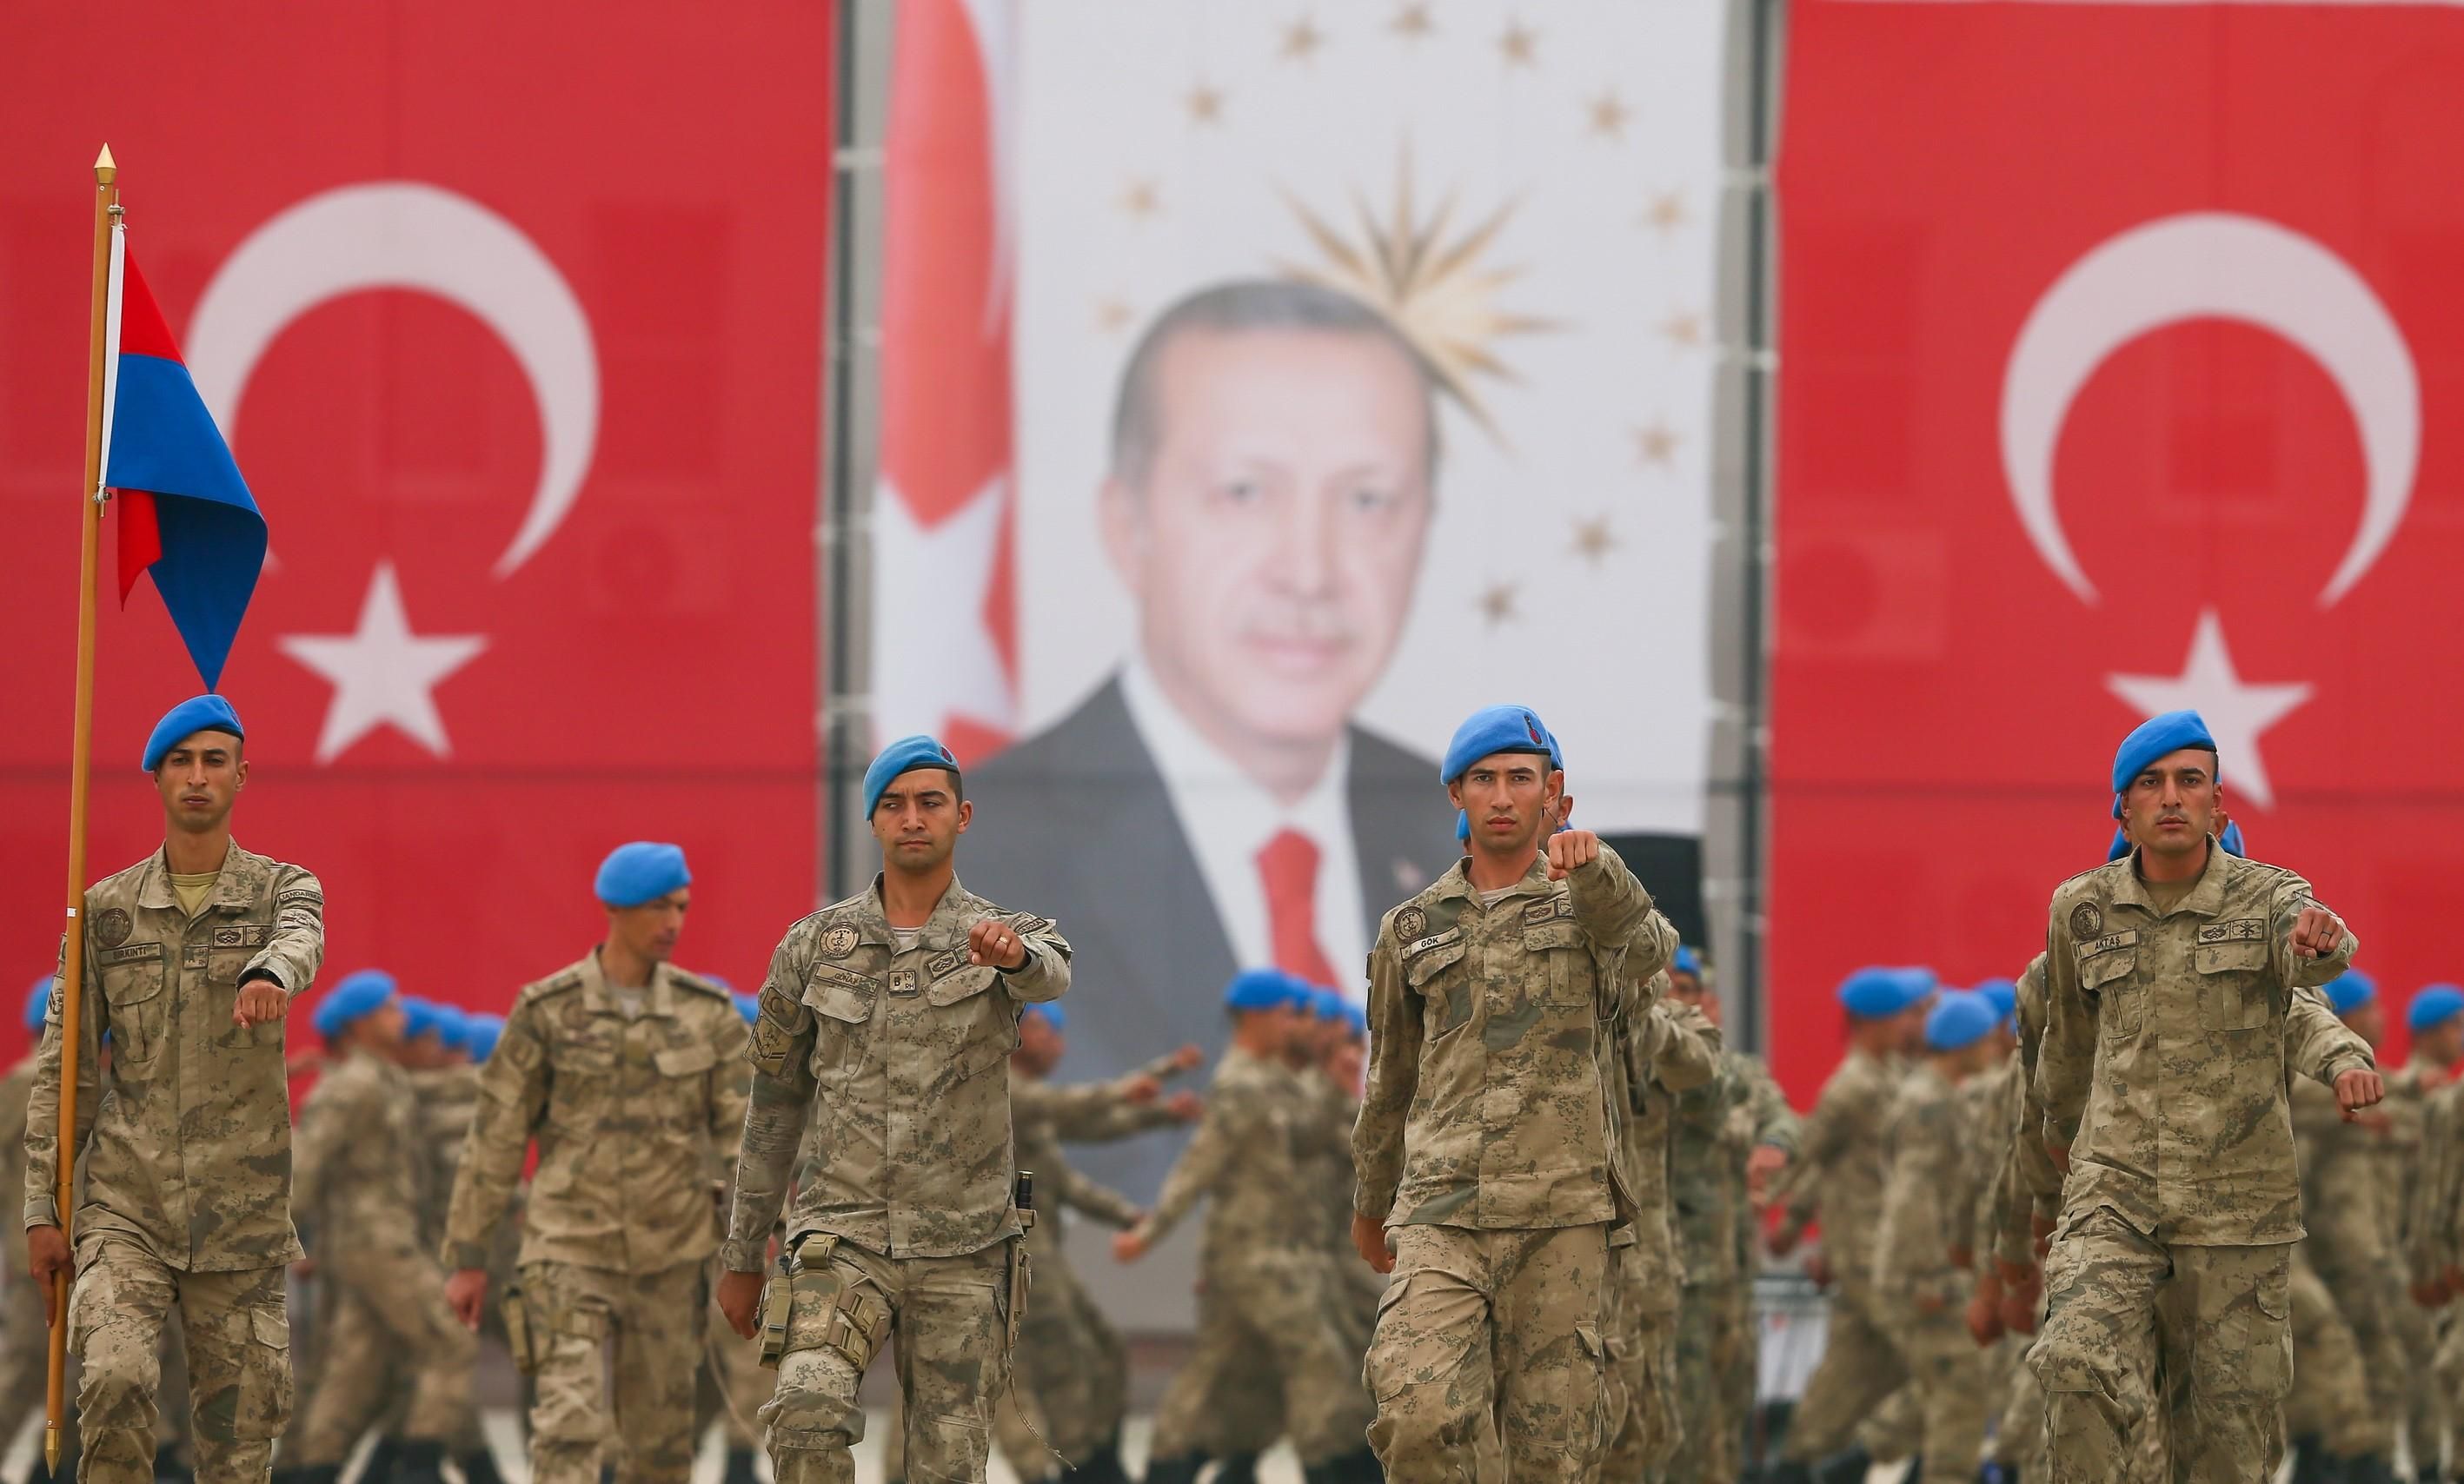 "Перемога Туреччини": що пишуть західні ЗМІ про призупинку операції Ердогана в Сирії